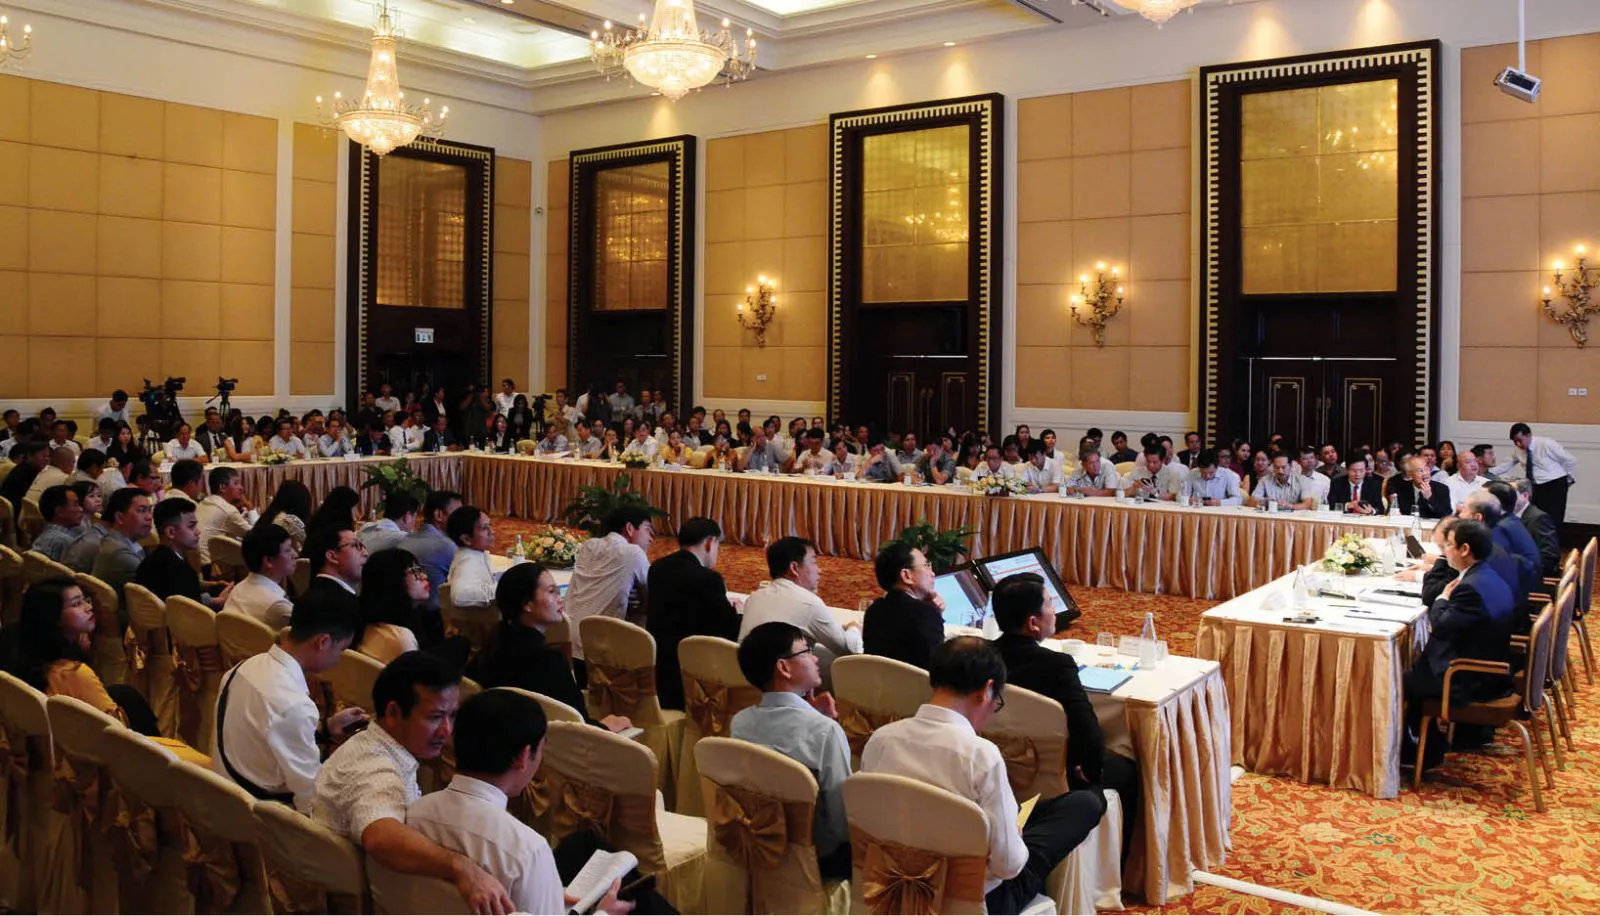 Tổ chức hội nghị tại Kiên Giang